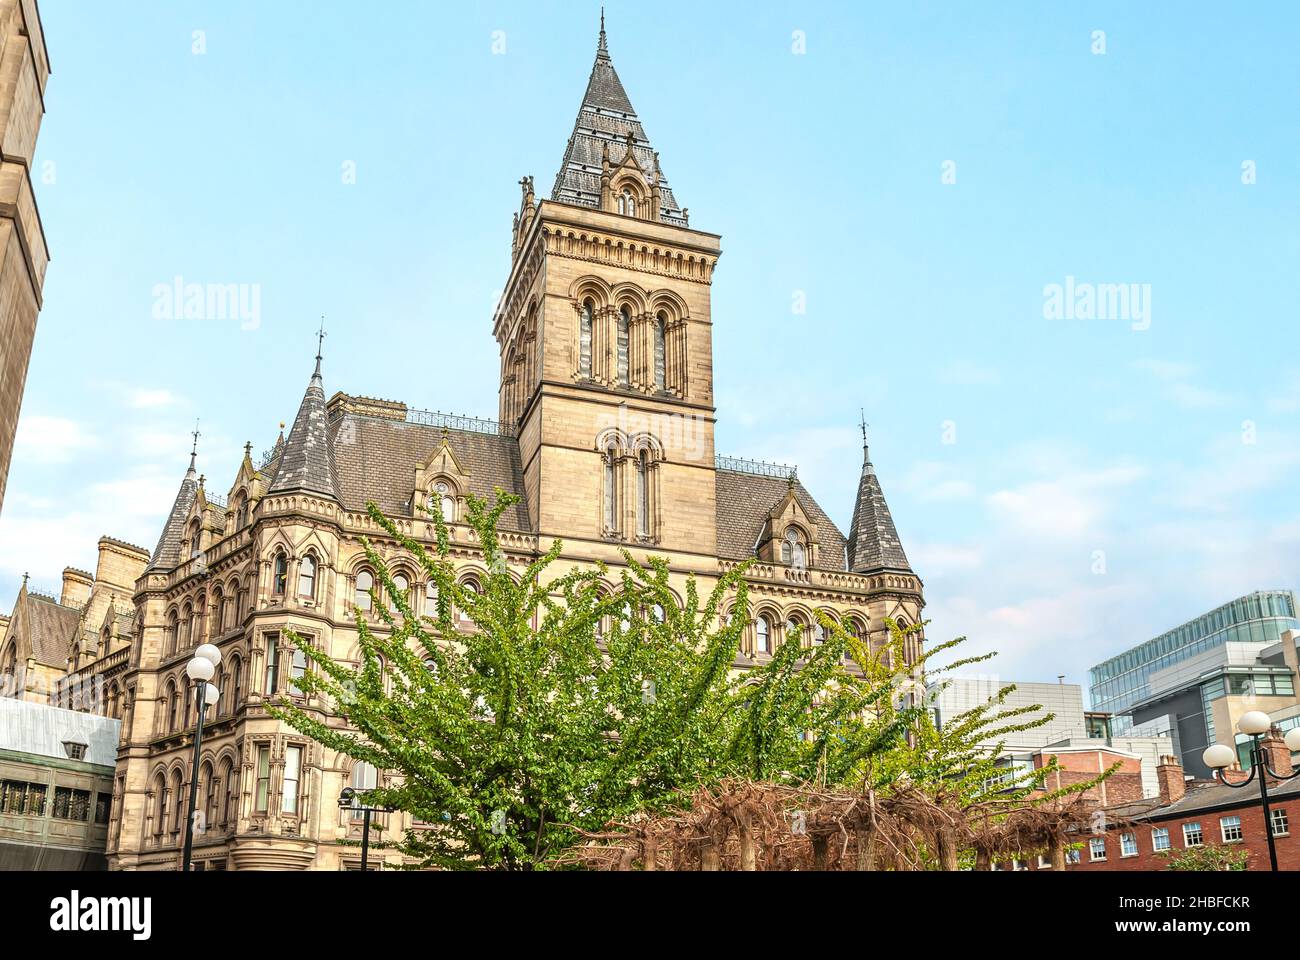 L'hôtel de ville de Manchester est un bâtiment, en Angleterre, qui abrite le conseil municipal de Manchester. Banque D'Images